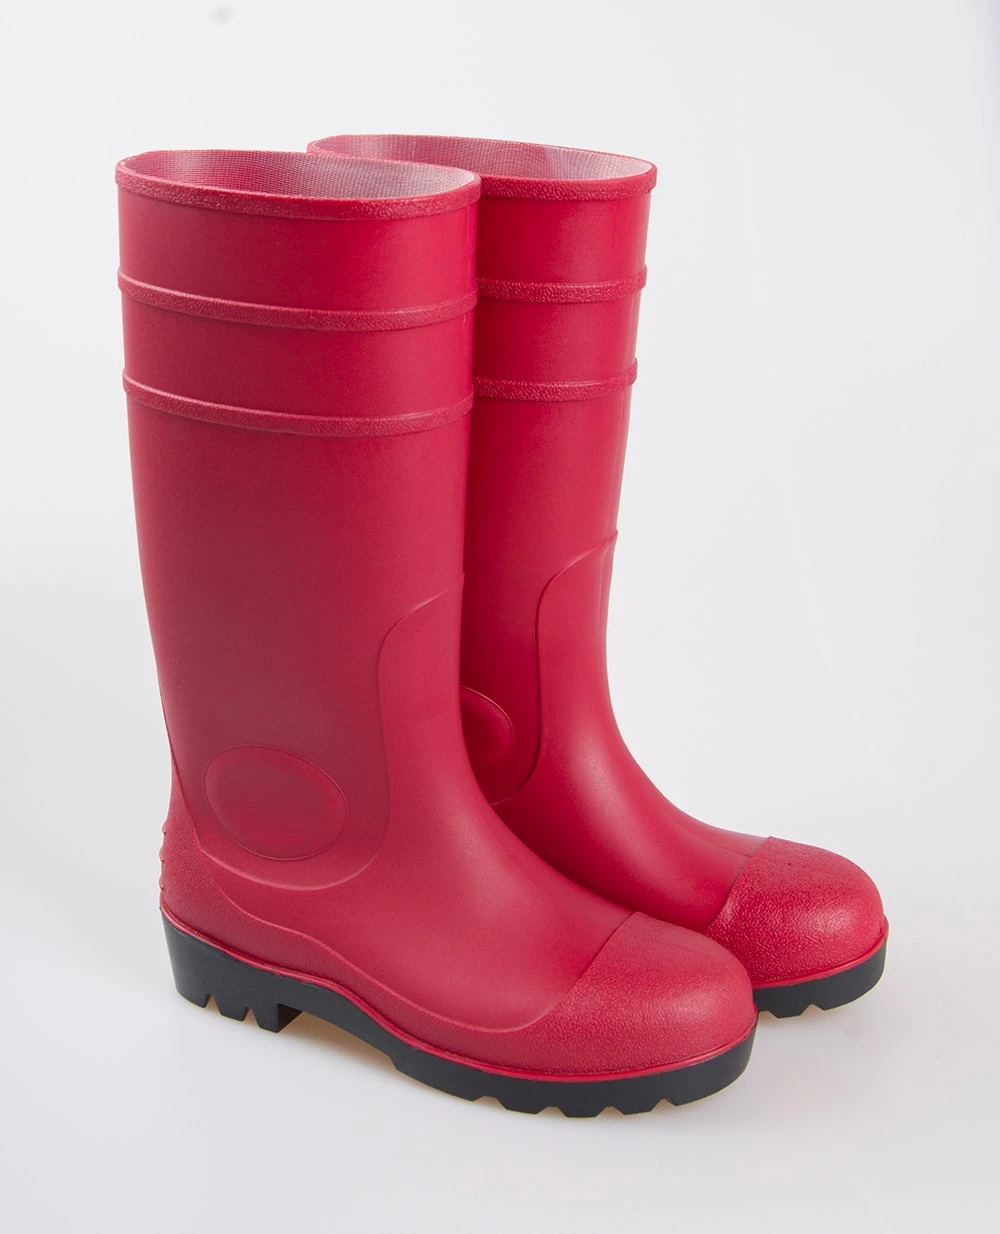 Black Neoprene Safety Rubber Rain Boots for Men